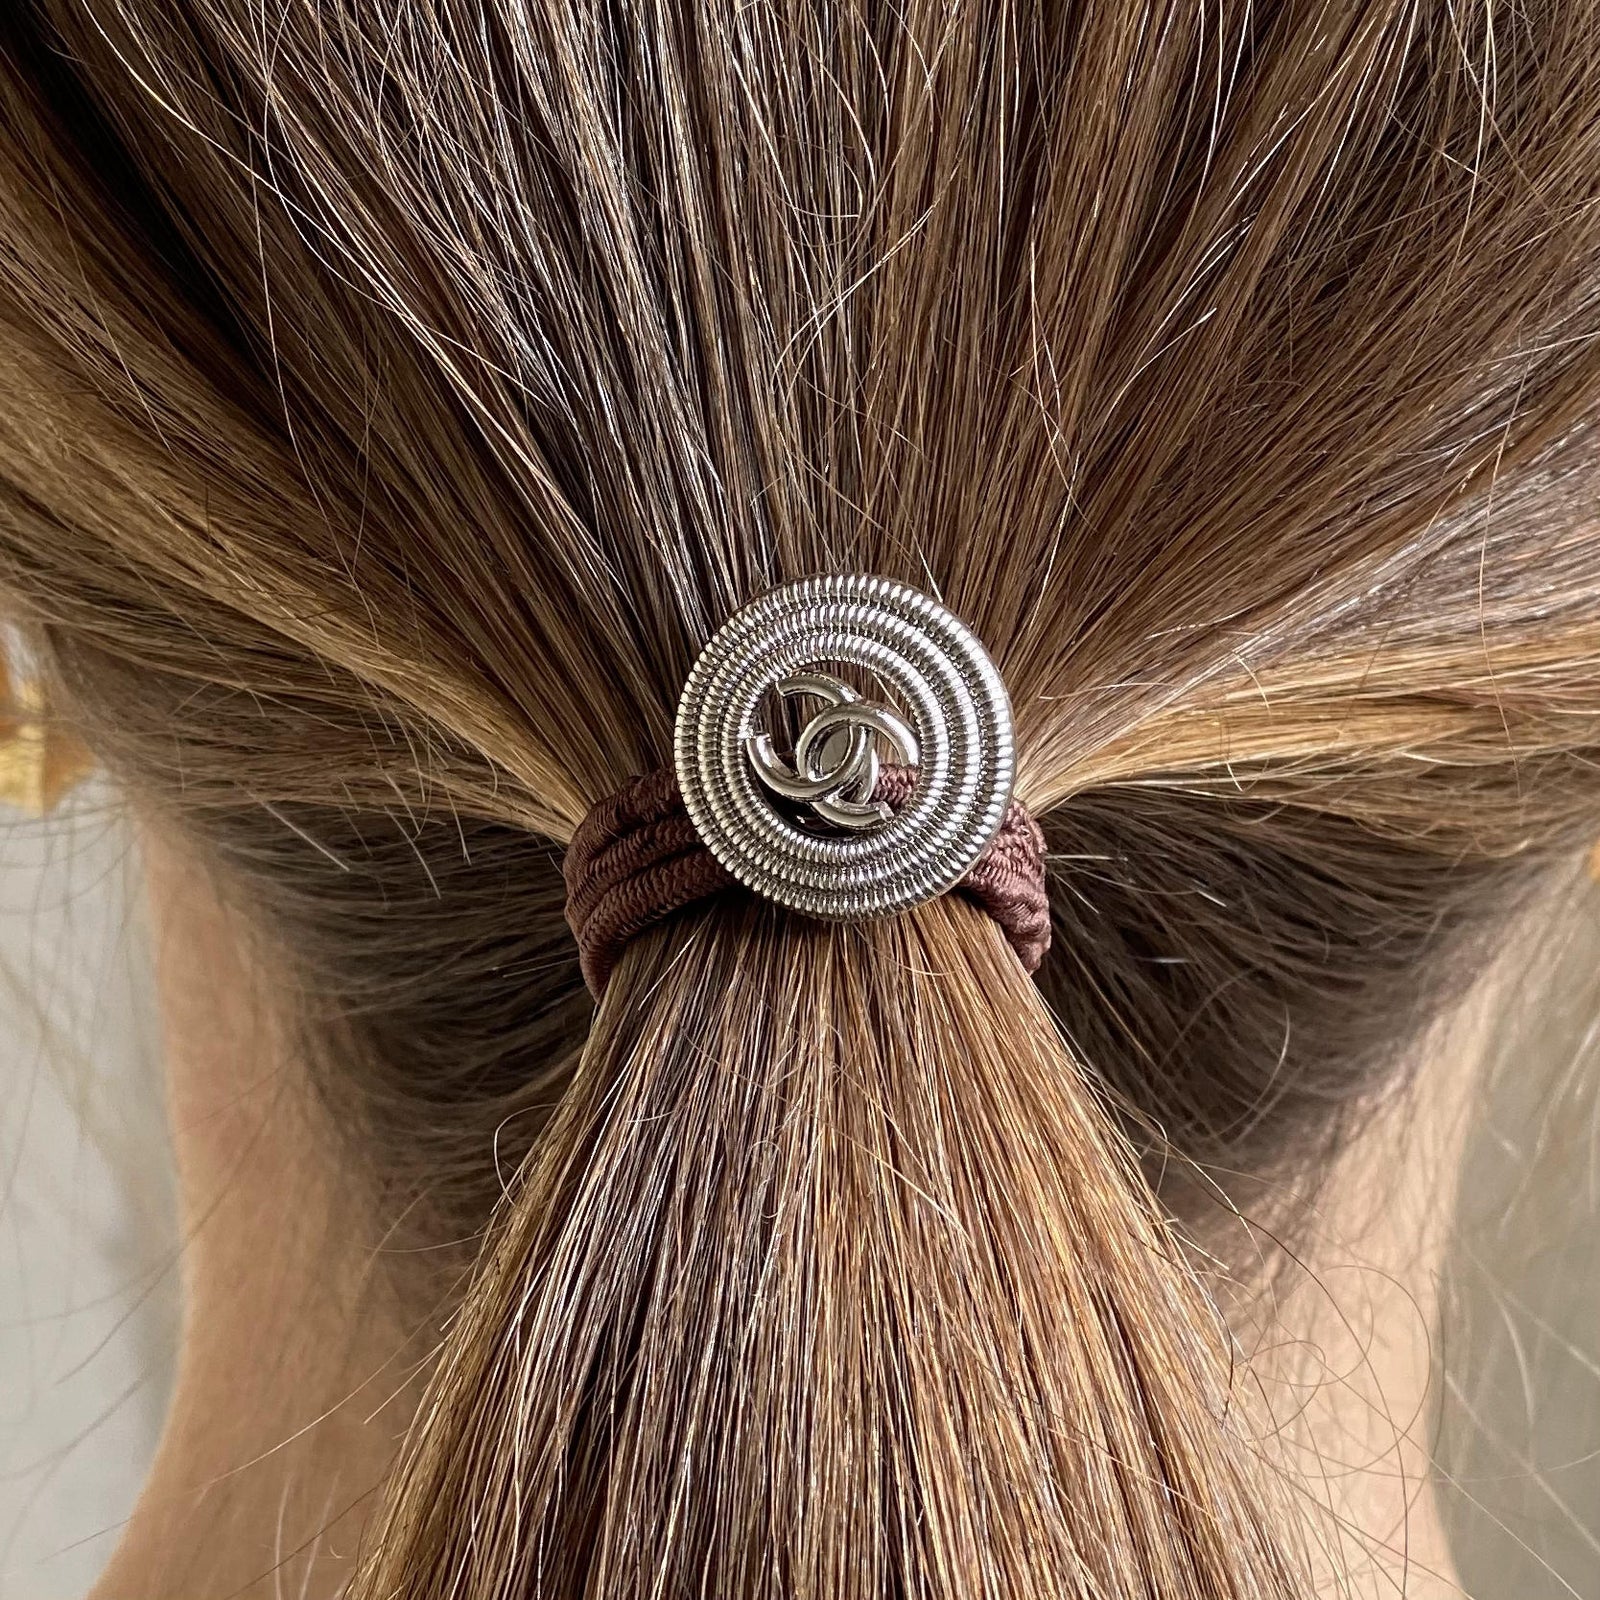 Easy Updo Extensions Repurposed Hair Ties - LV Flower, 17mm Black / Thin